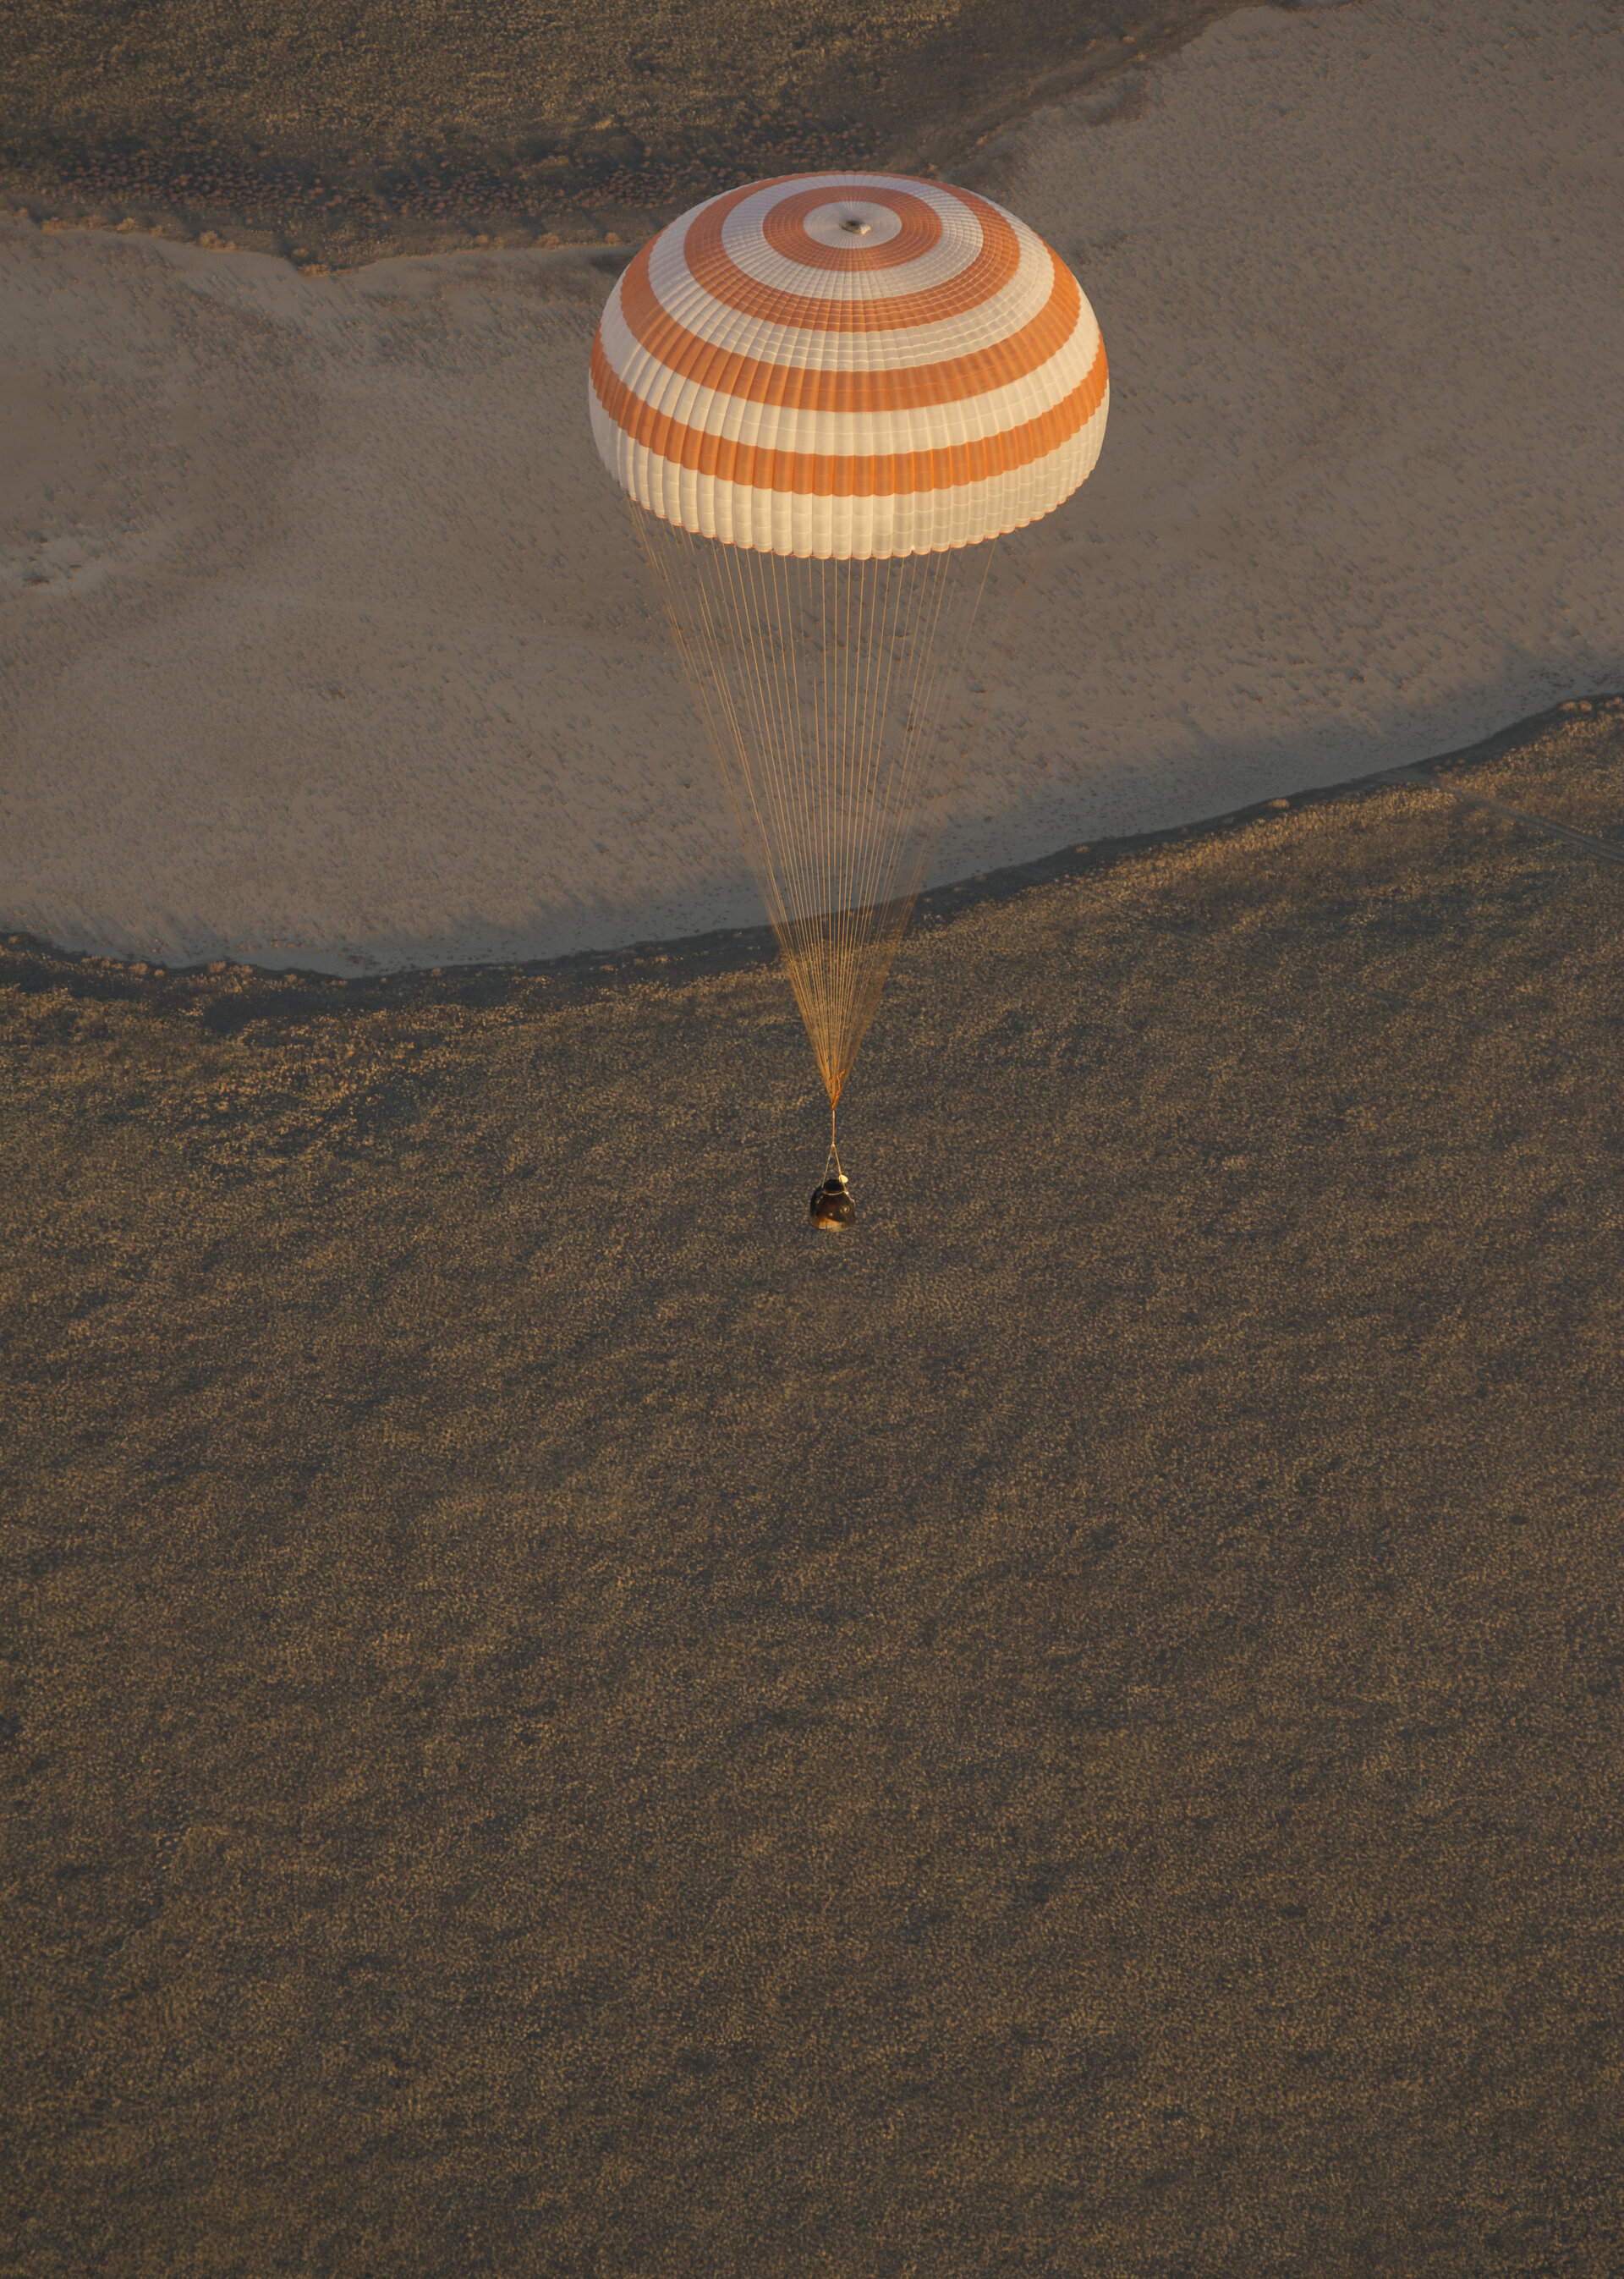 Soyuz TMA-09M before landing